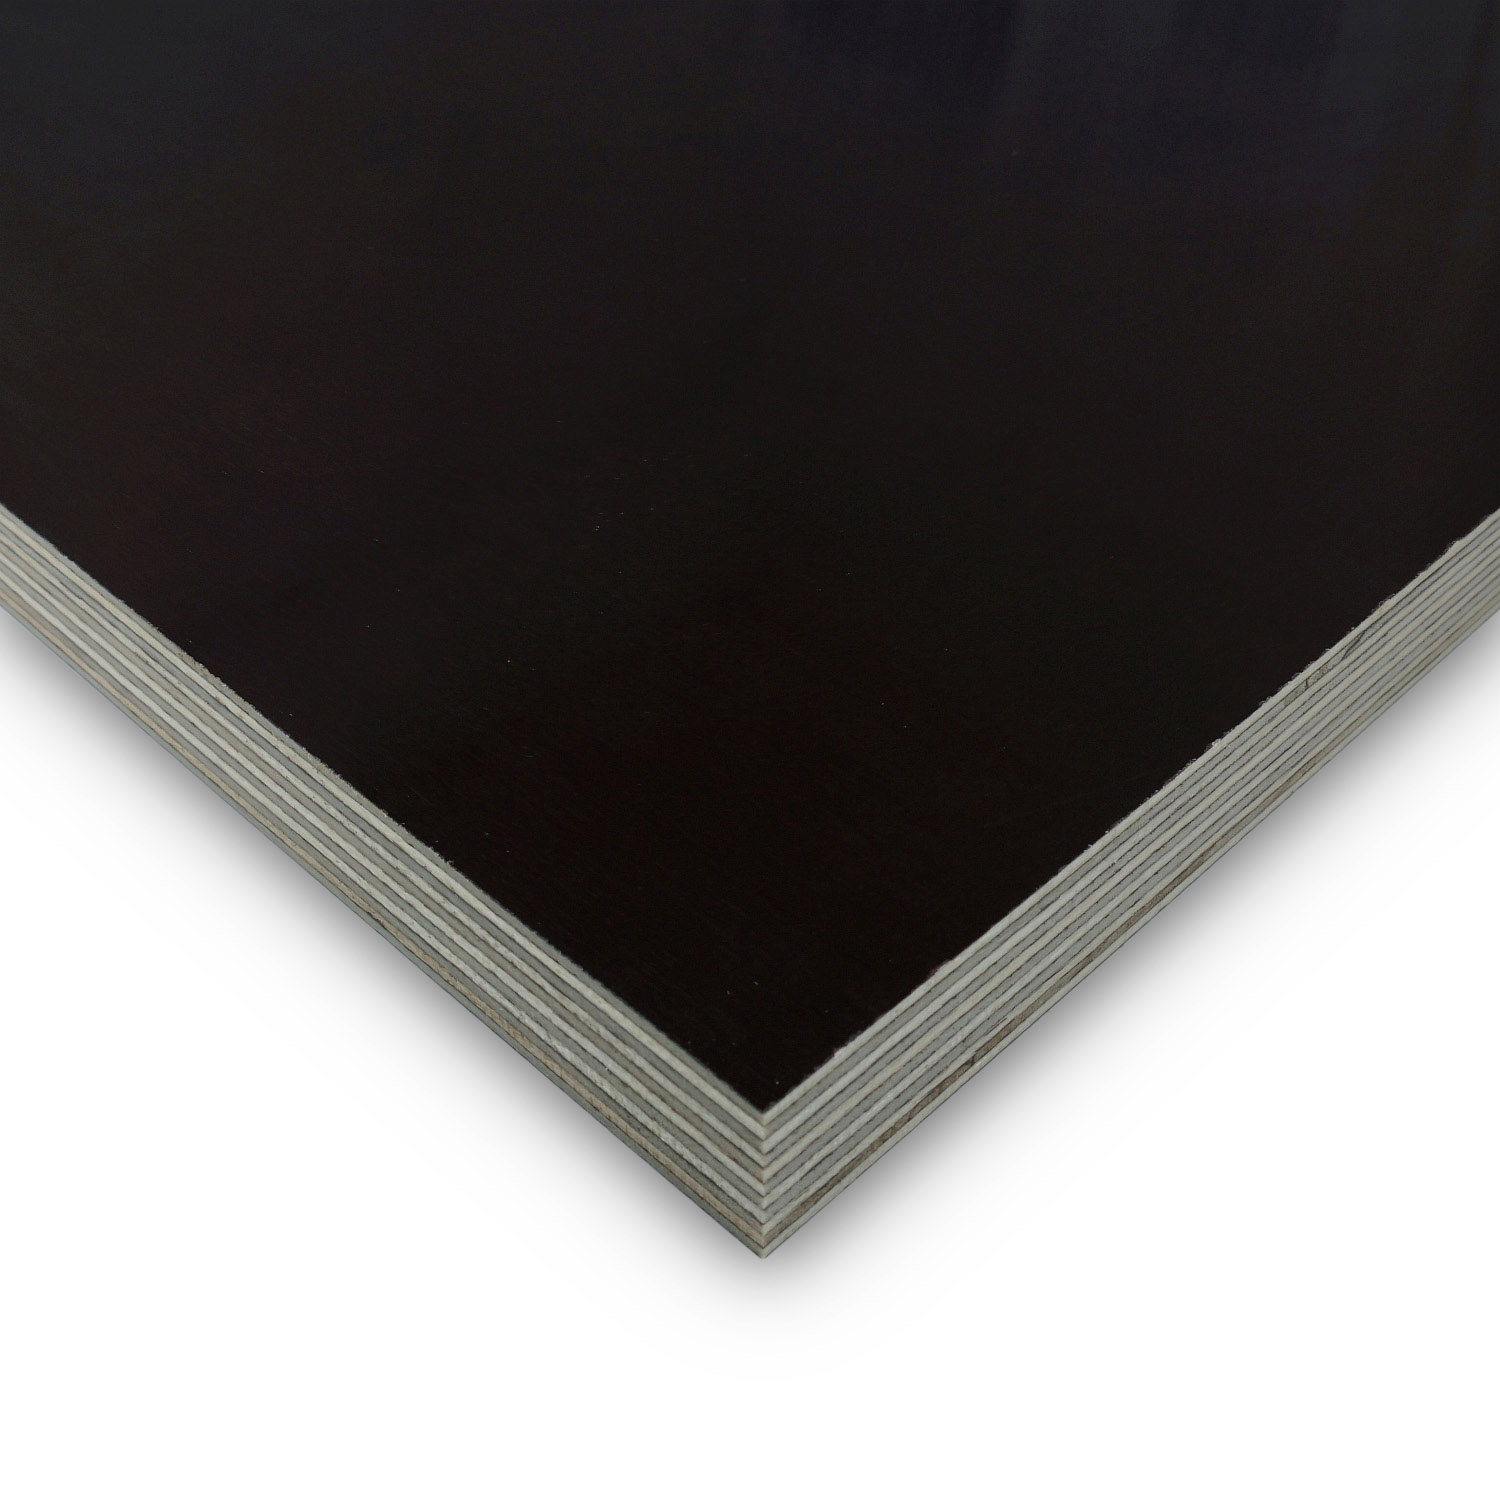 190x60 cm Siebdruckplatte 27mm Zuschnitt Multiplex Birke Holz Bodenplatte